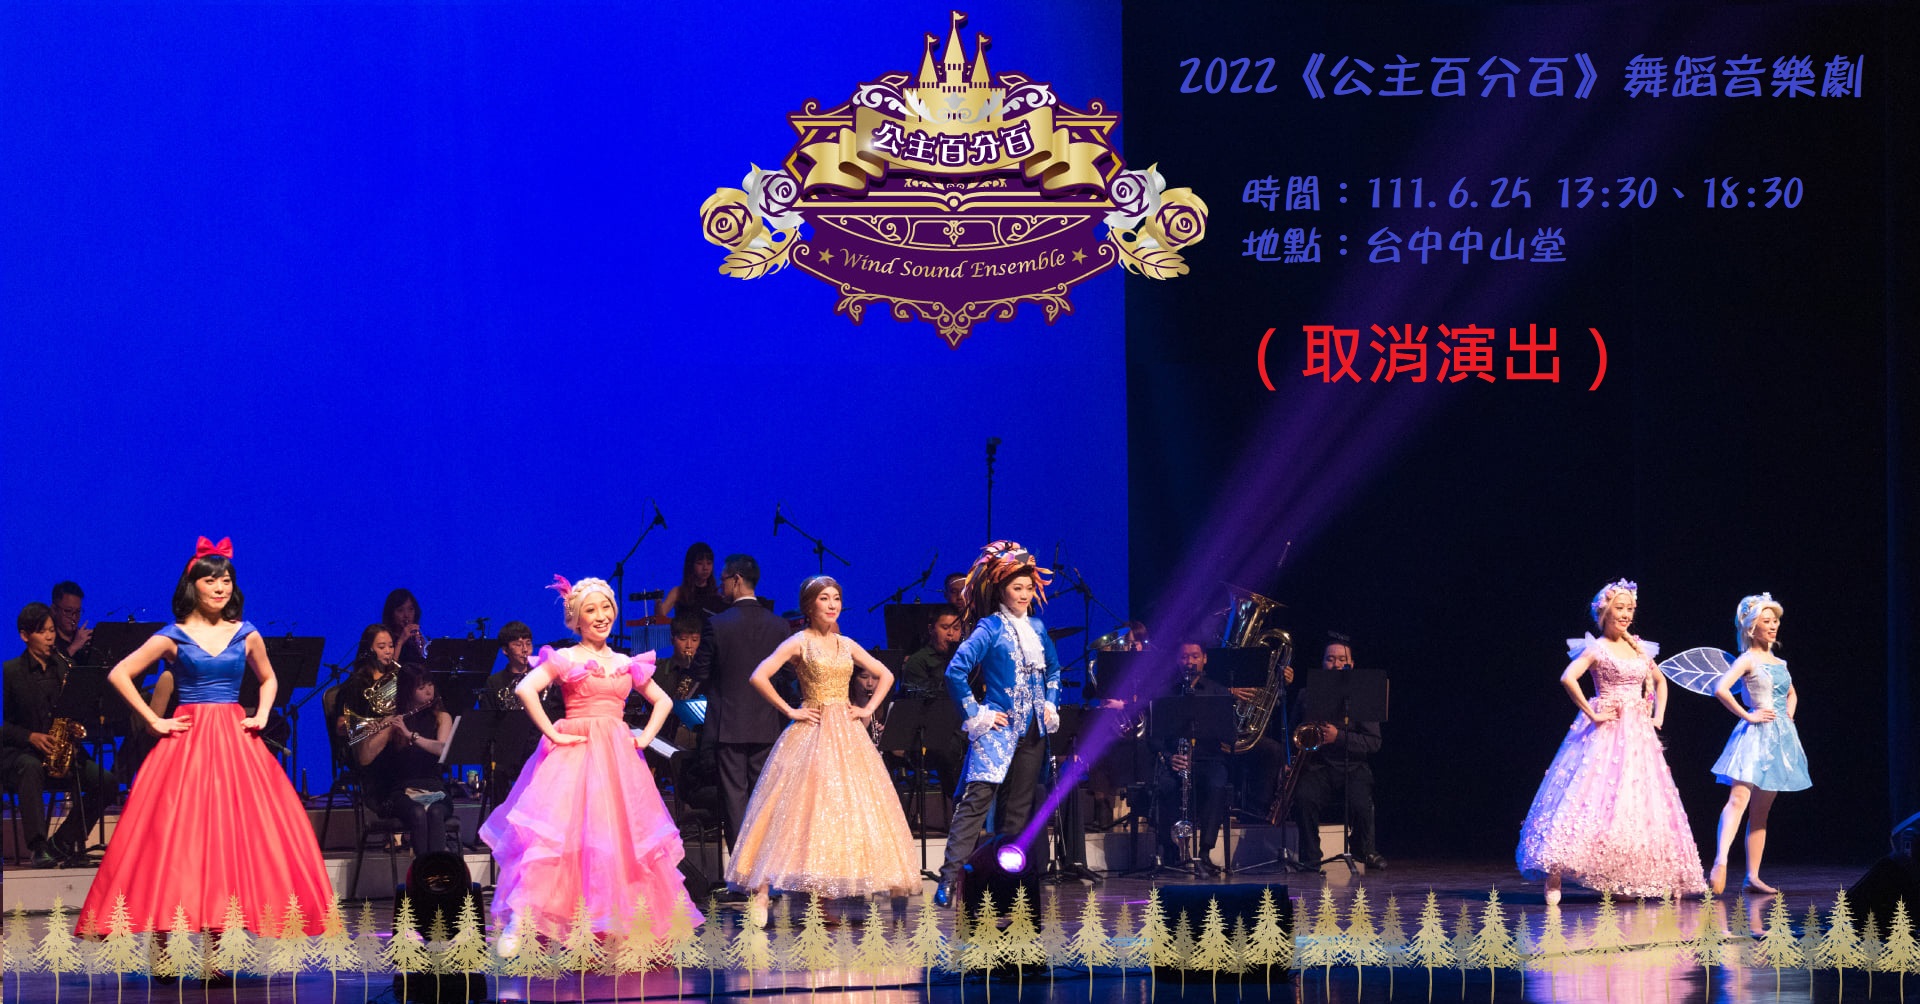 2022《公主百分百》舞蹈音樂劇